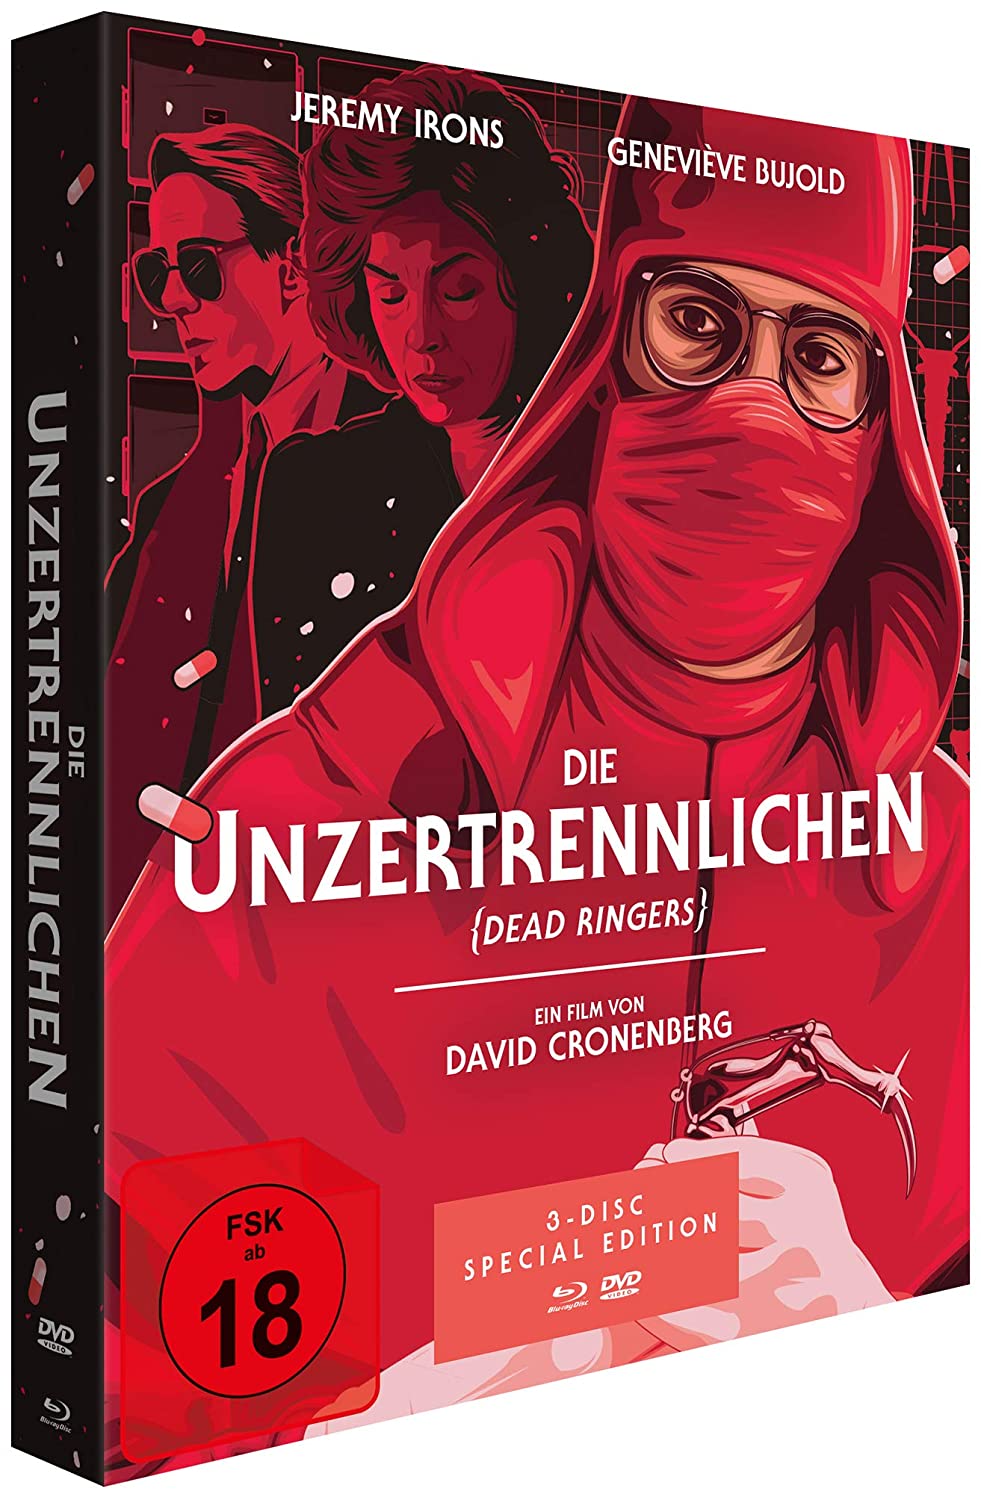 Die Unzertrennlichen - The Dead Ringers (Special Edition, 1 Blu-ray + 2 DVDs)